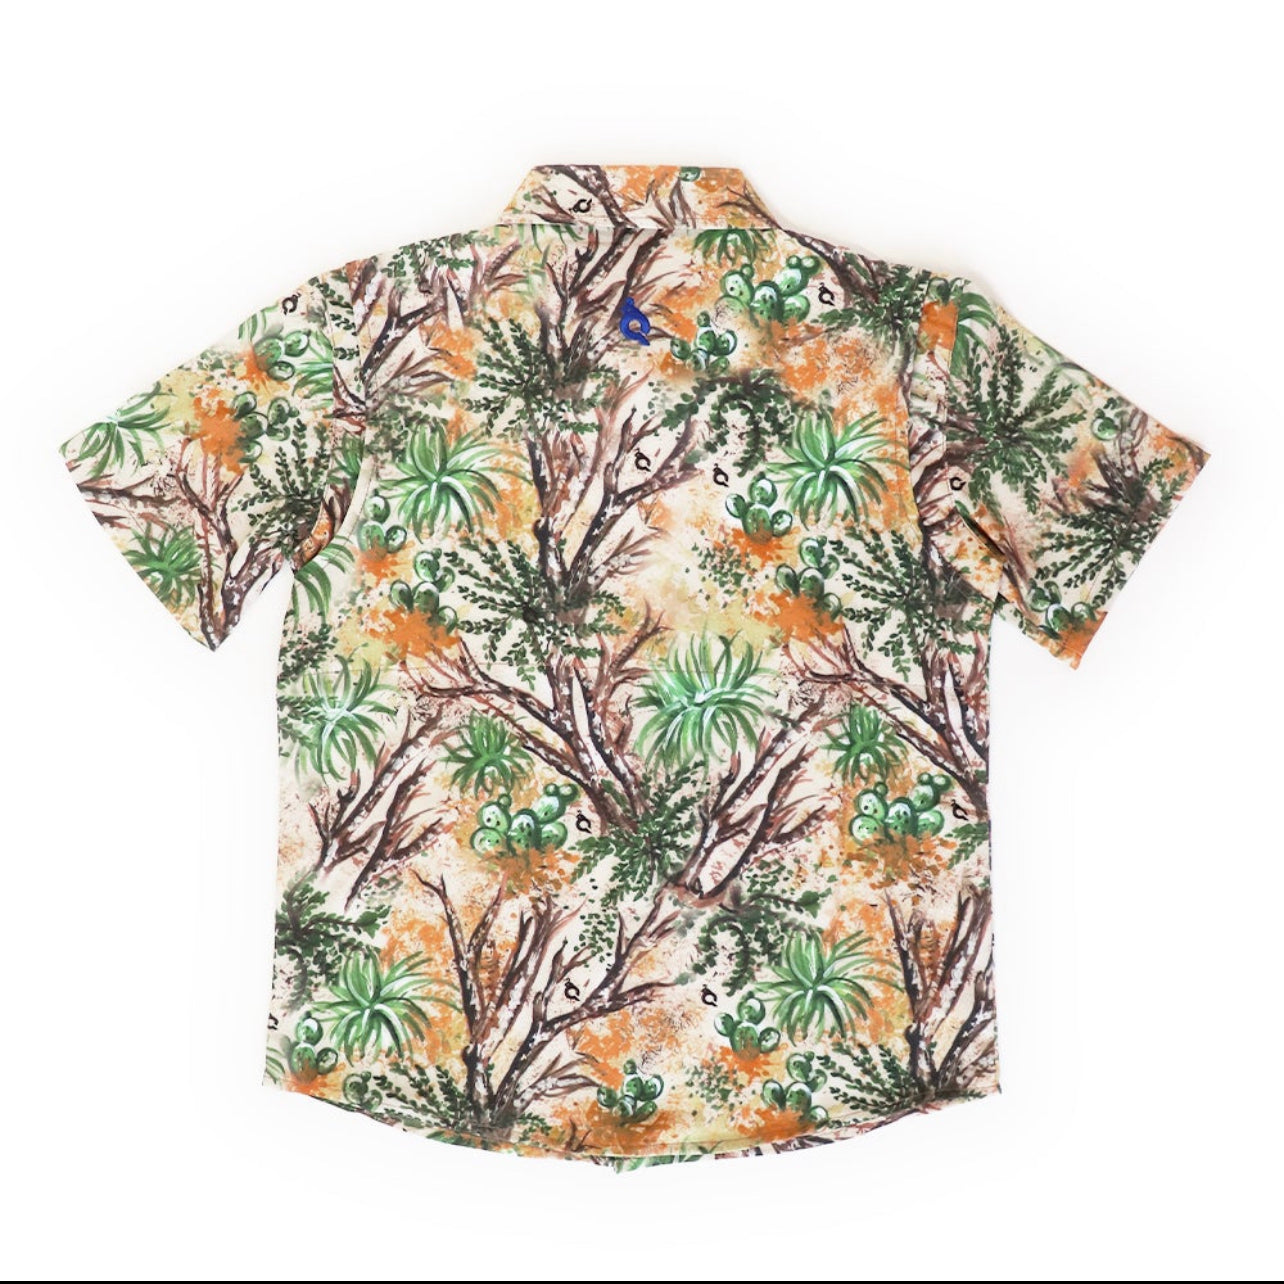 Men's - Cactus Camo & Brown Short Sleeve Shirt